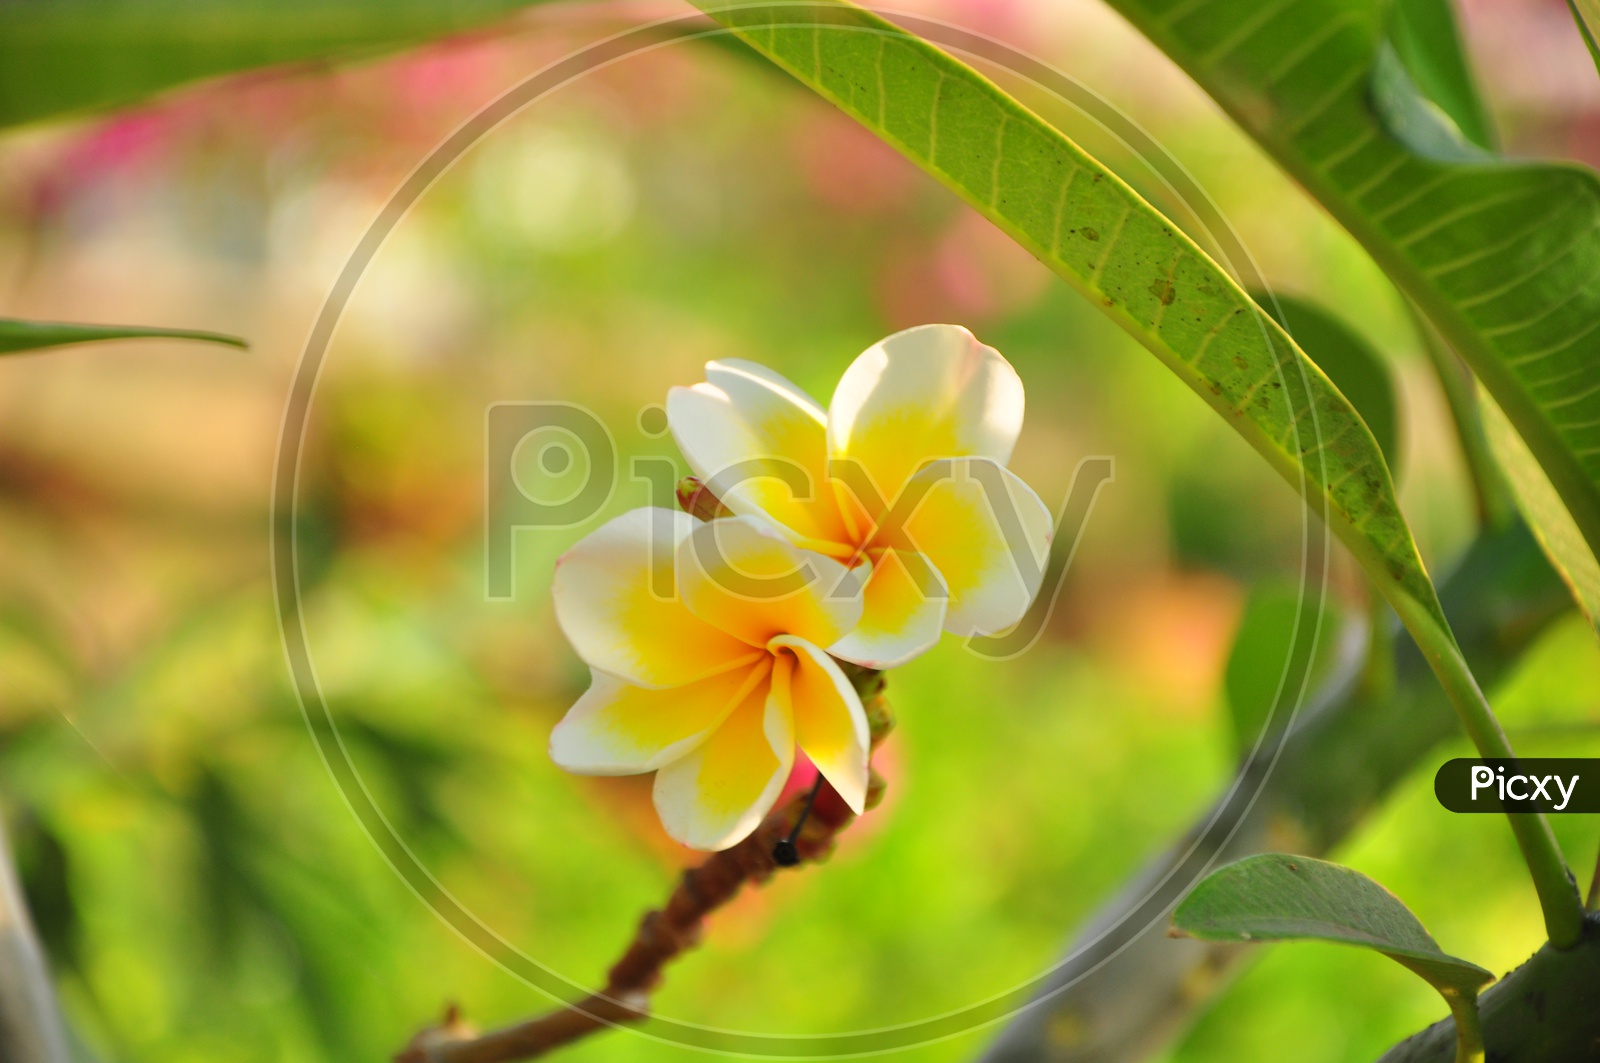 Frangipani Flower